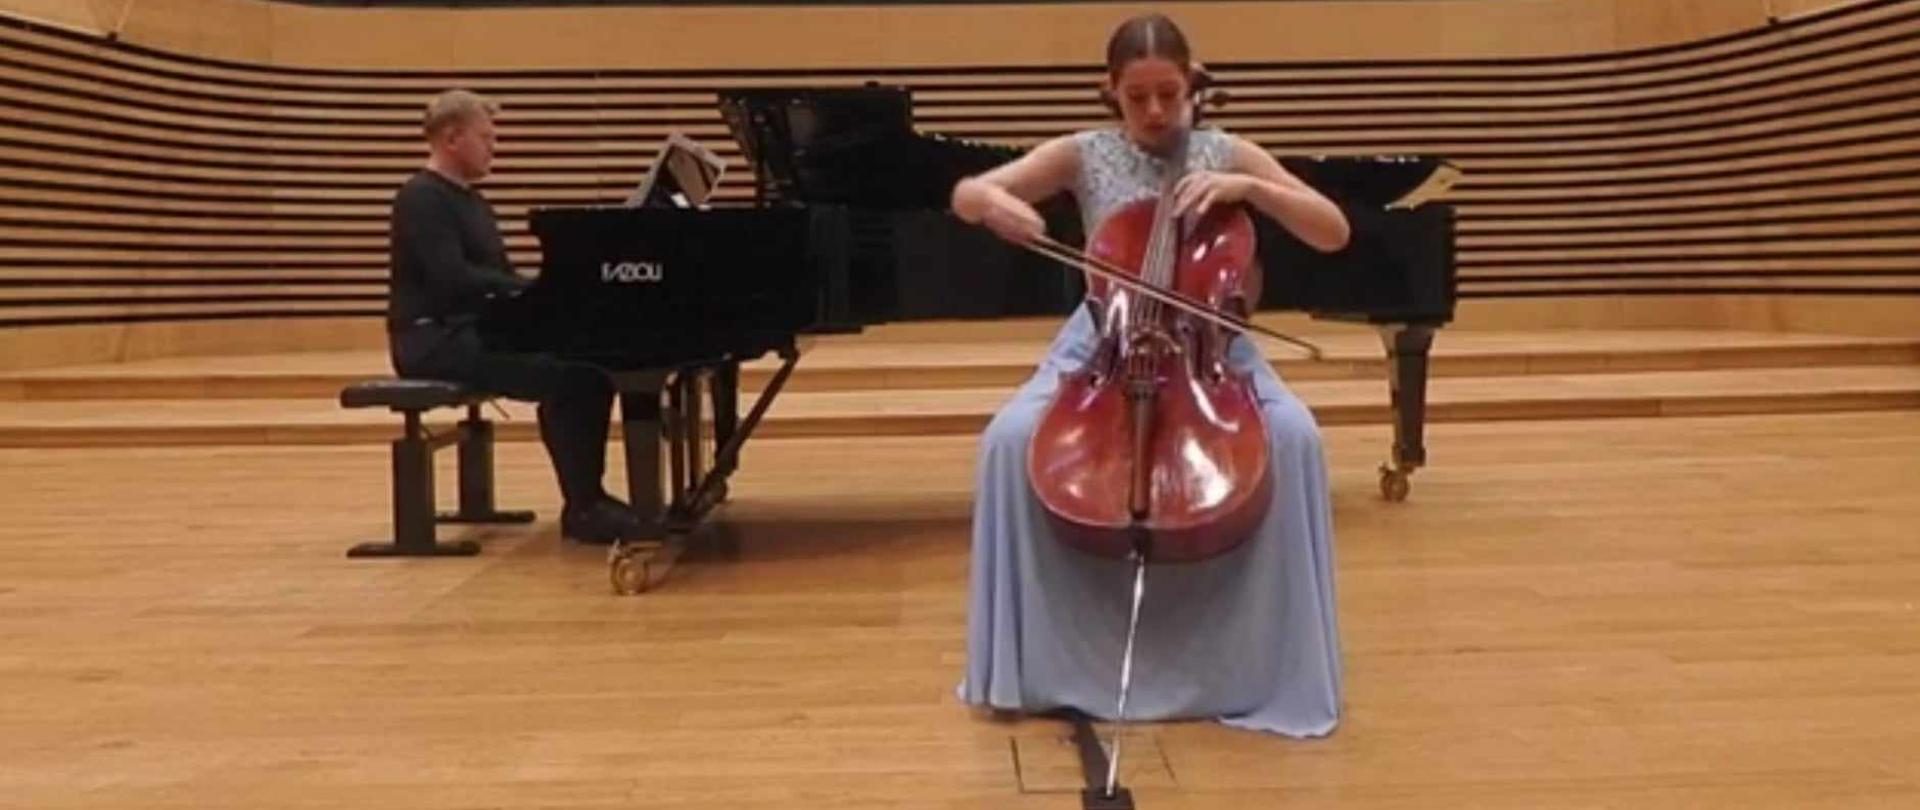 Nastolatka gra na wiolonczeli na środku estrady sali koncertowej PSM, za nią na fortepianie gra mężczyzna.